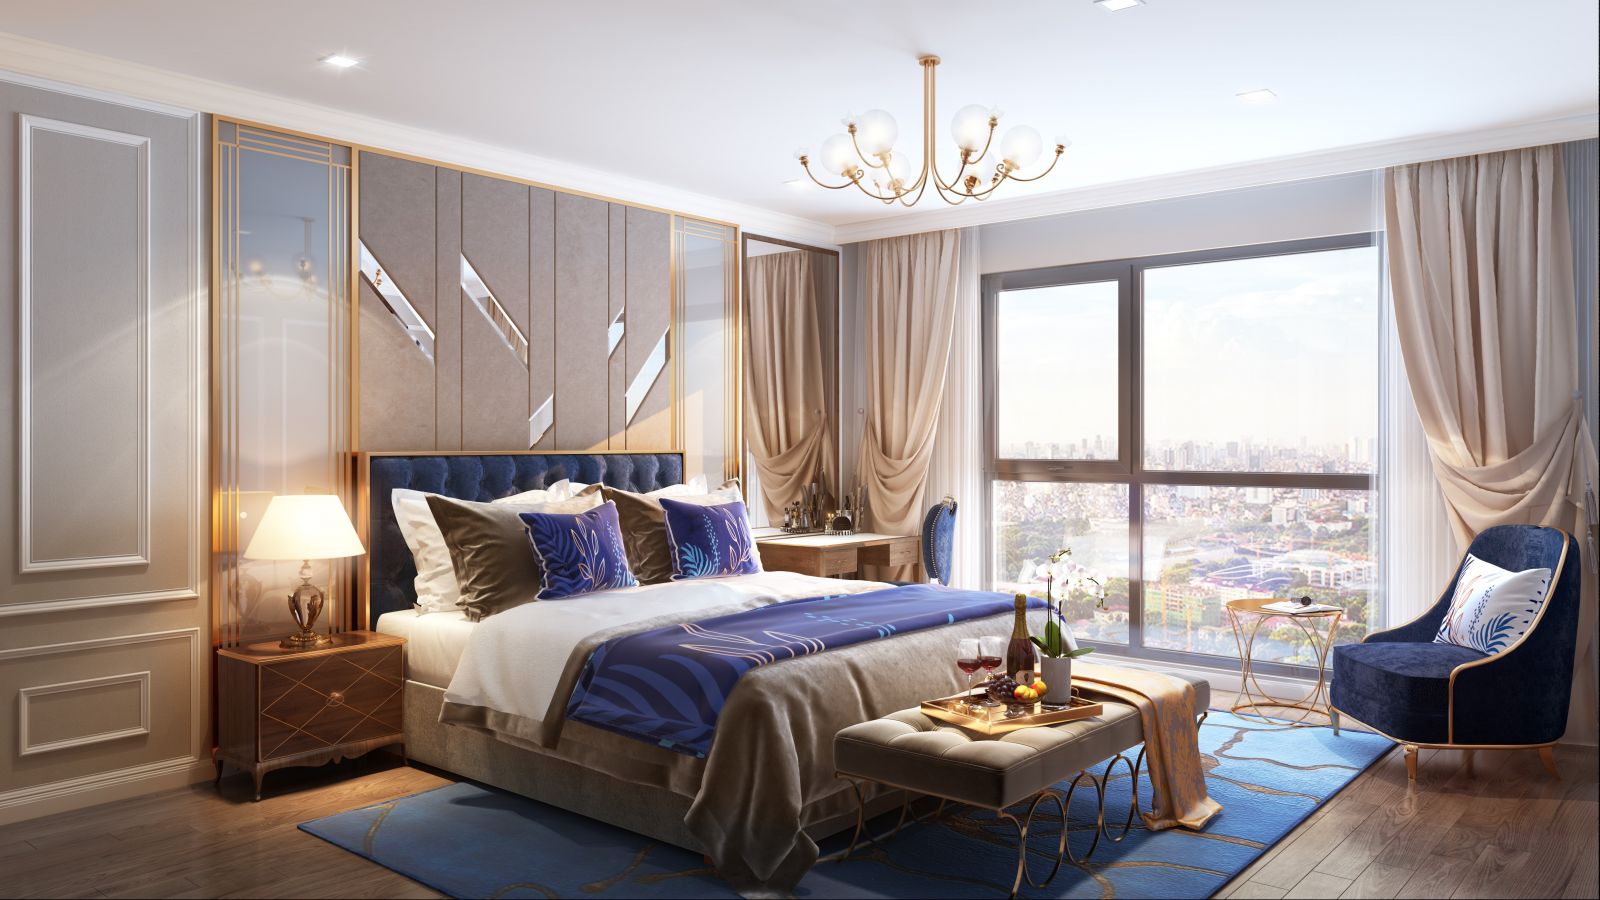 Hình ảnh minh họa phòng ngủ căn hộ dự án Rivera Park Hà Nội